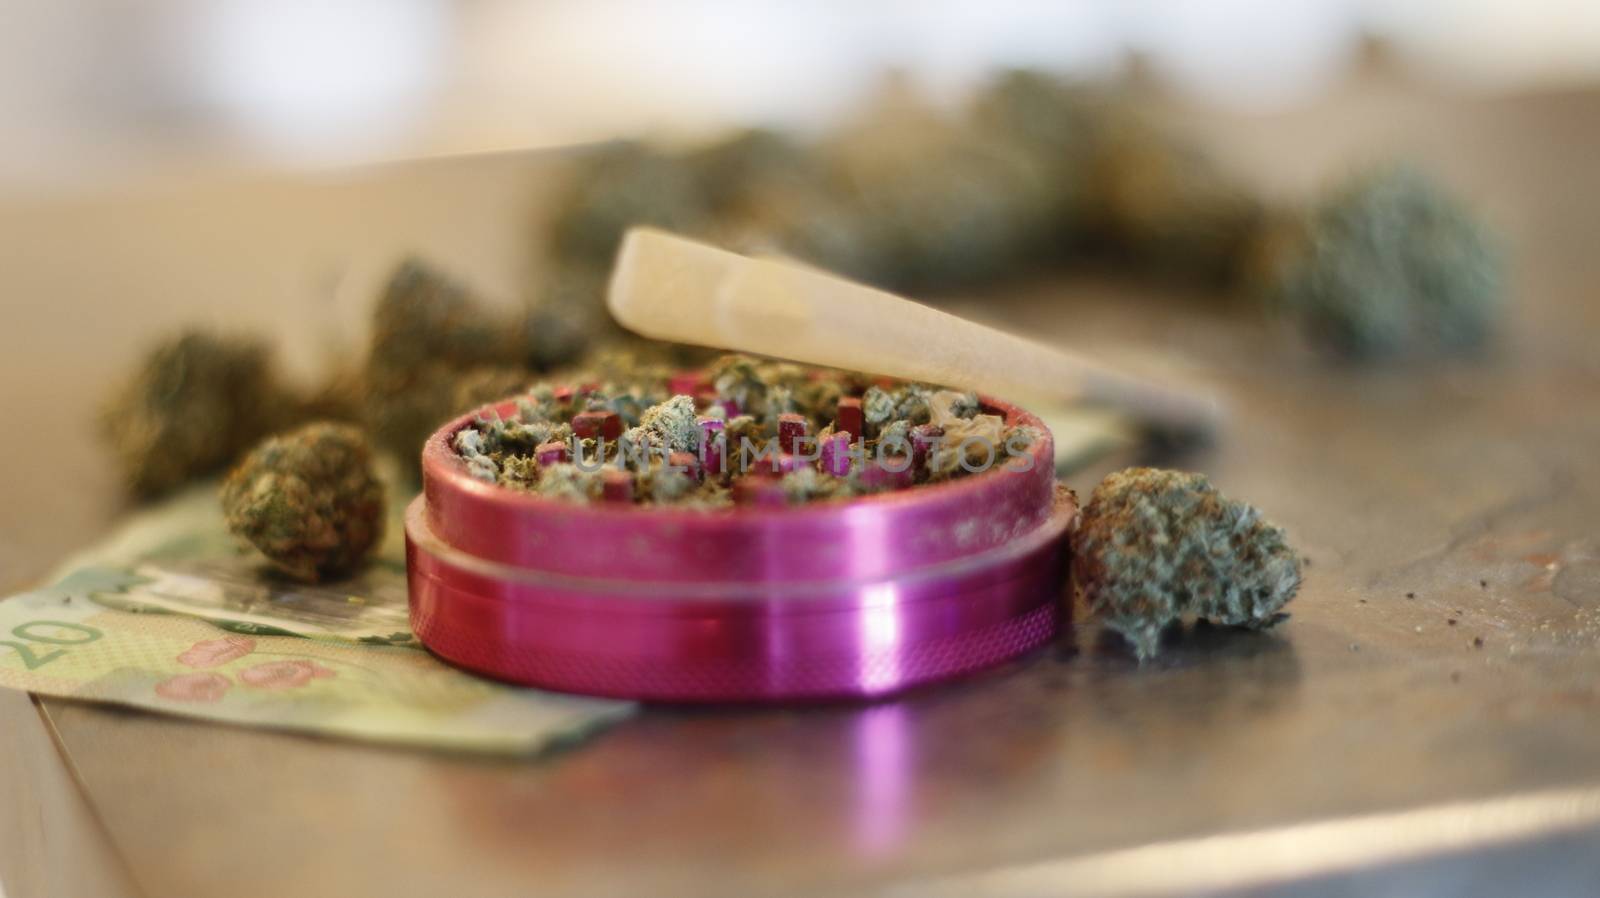 marijuana buds spread around canadian money by mynewturtle1